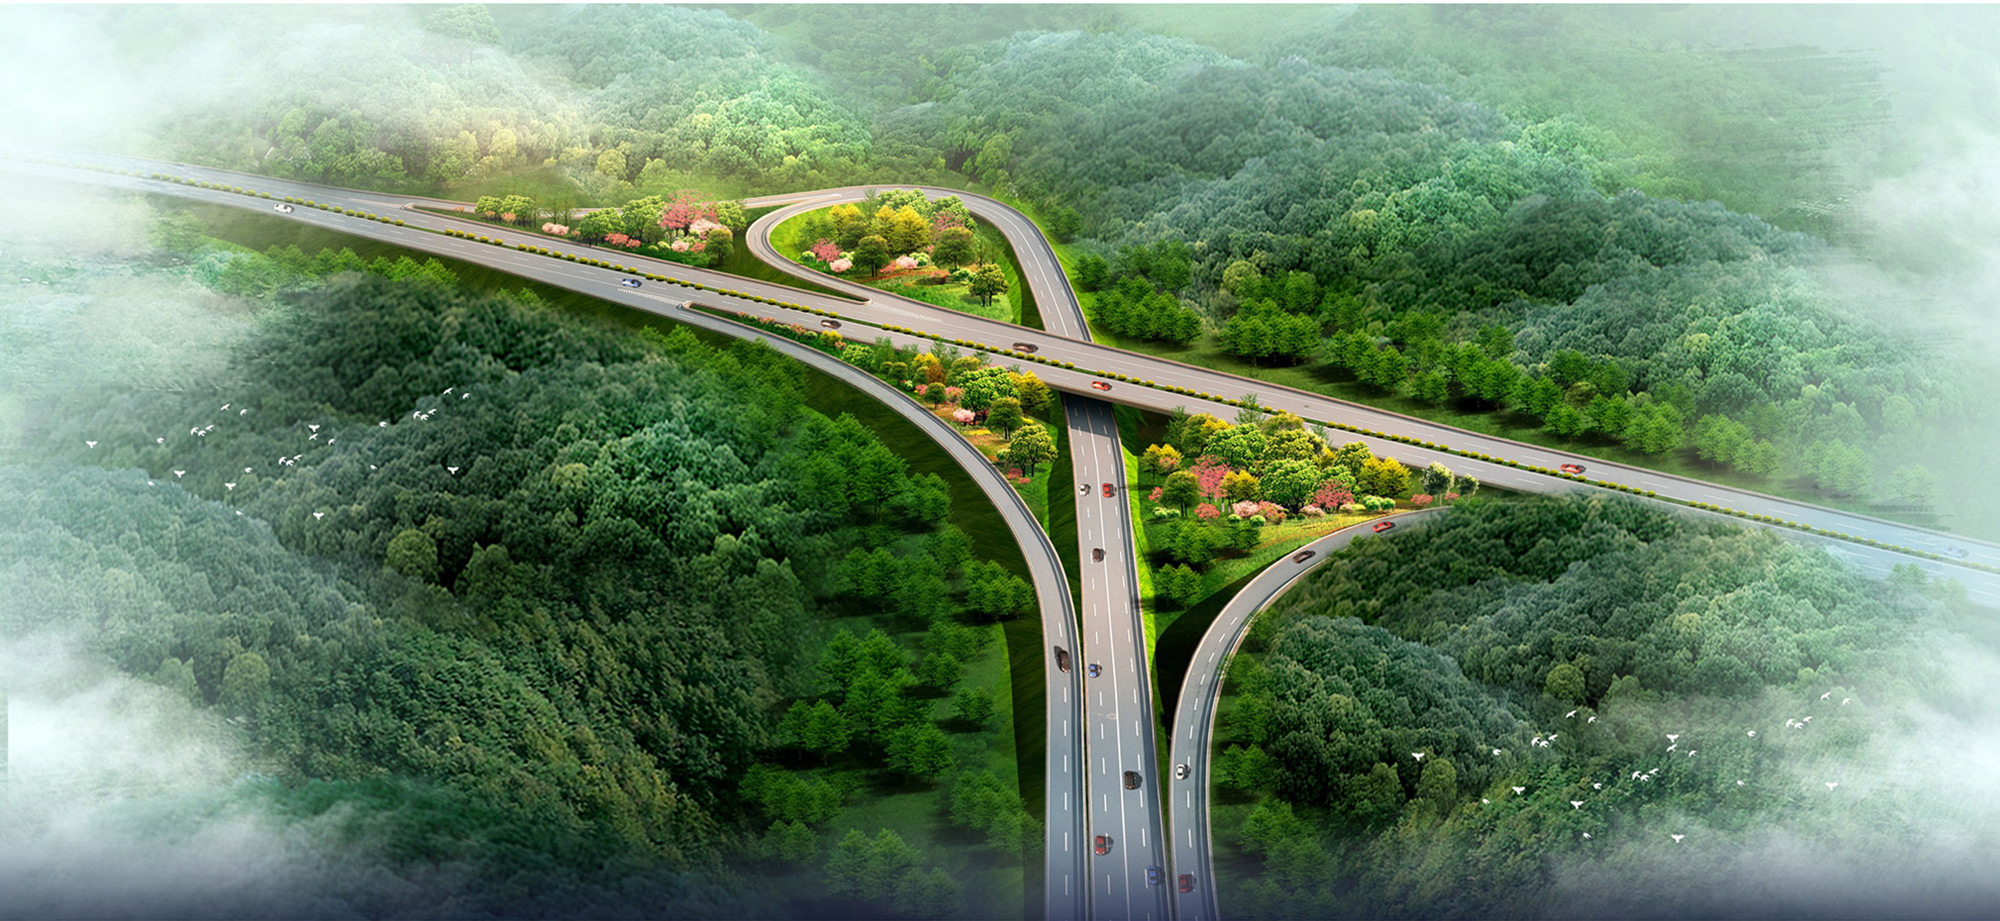 案例精选 粤赣高速公路生态景观林带建设项目  委托单位:广东粤赣